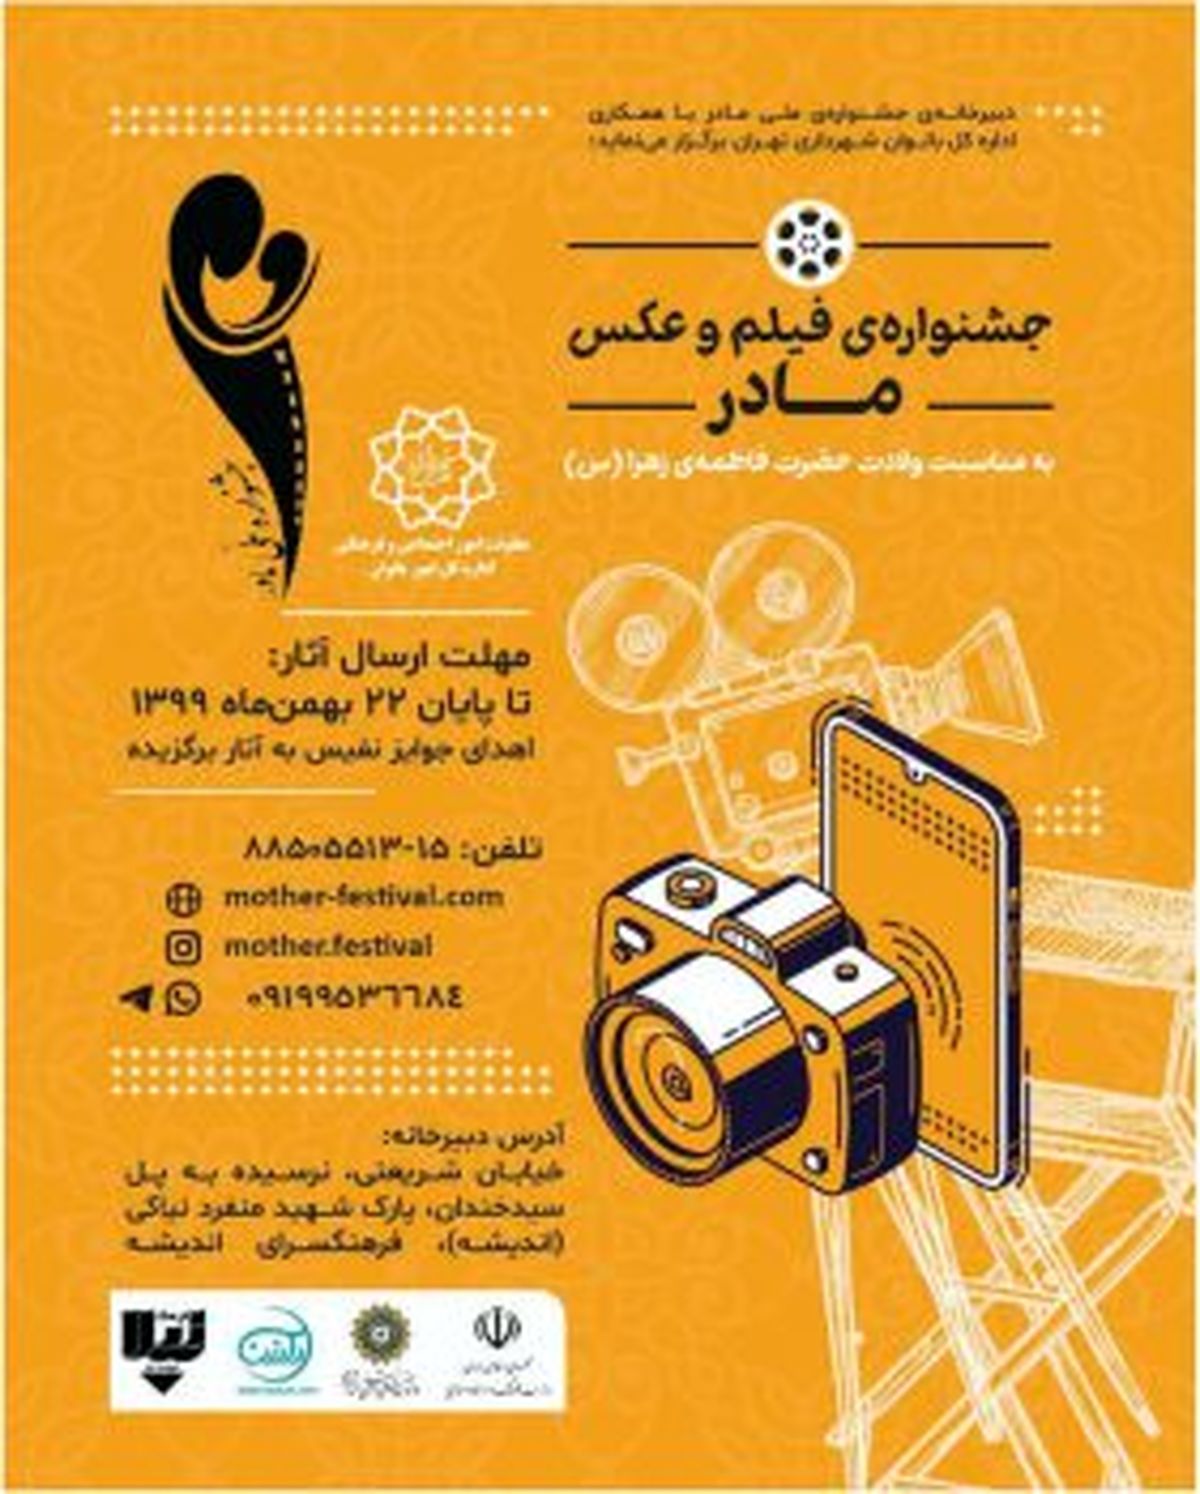 برپایی جشنواره ملی فیلم و عکس مادر، به مناسبت روز مادر در مناطق ۲۲ گانه تهران